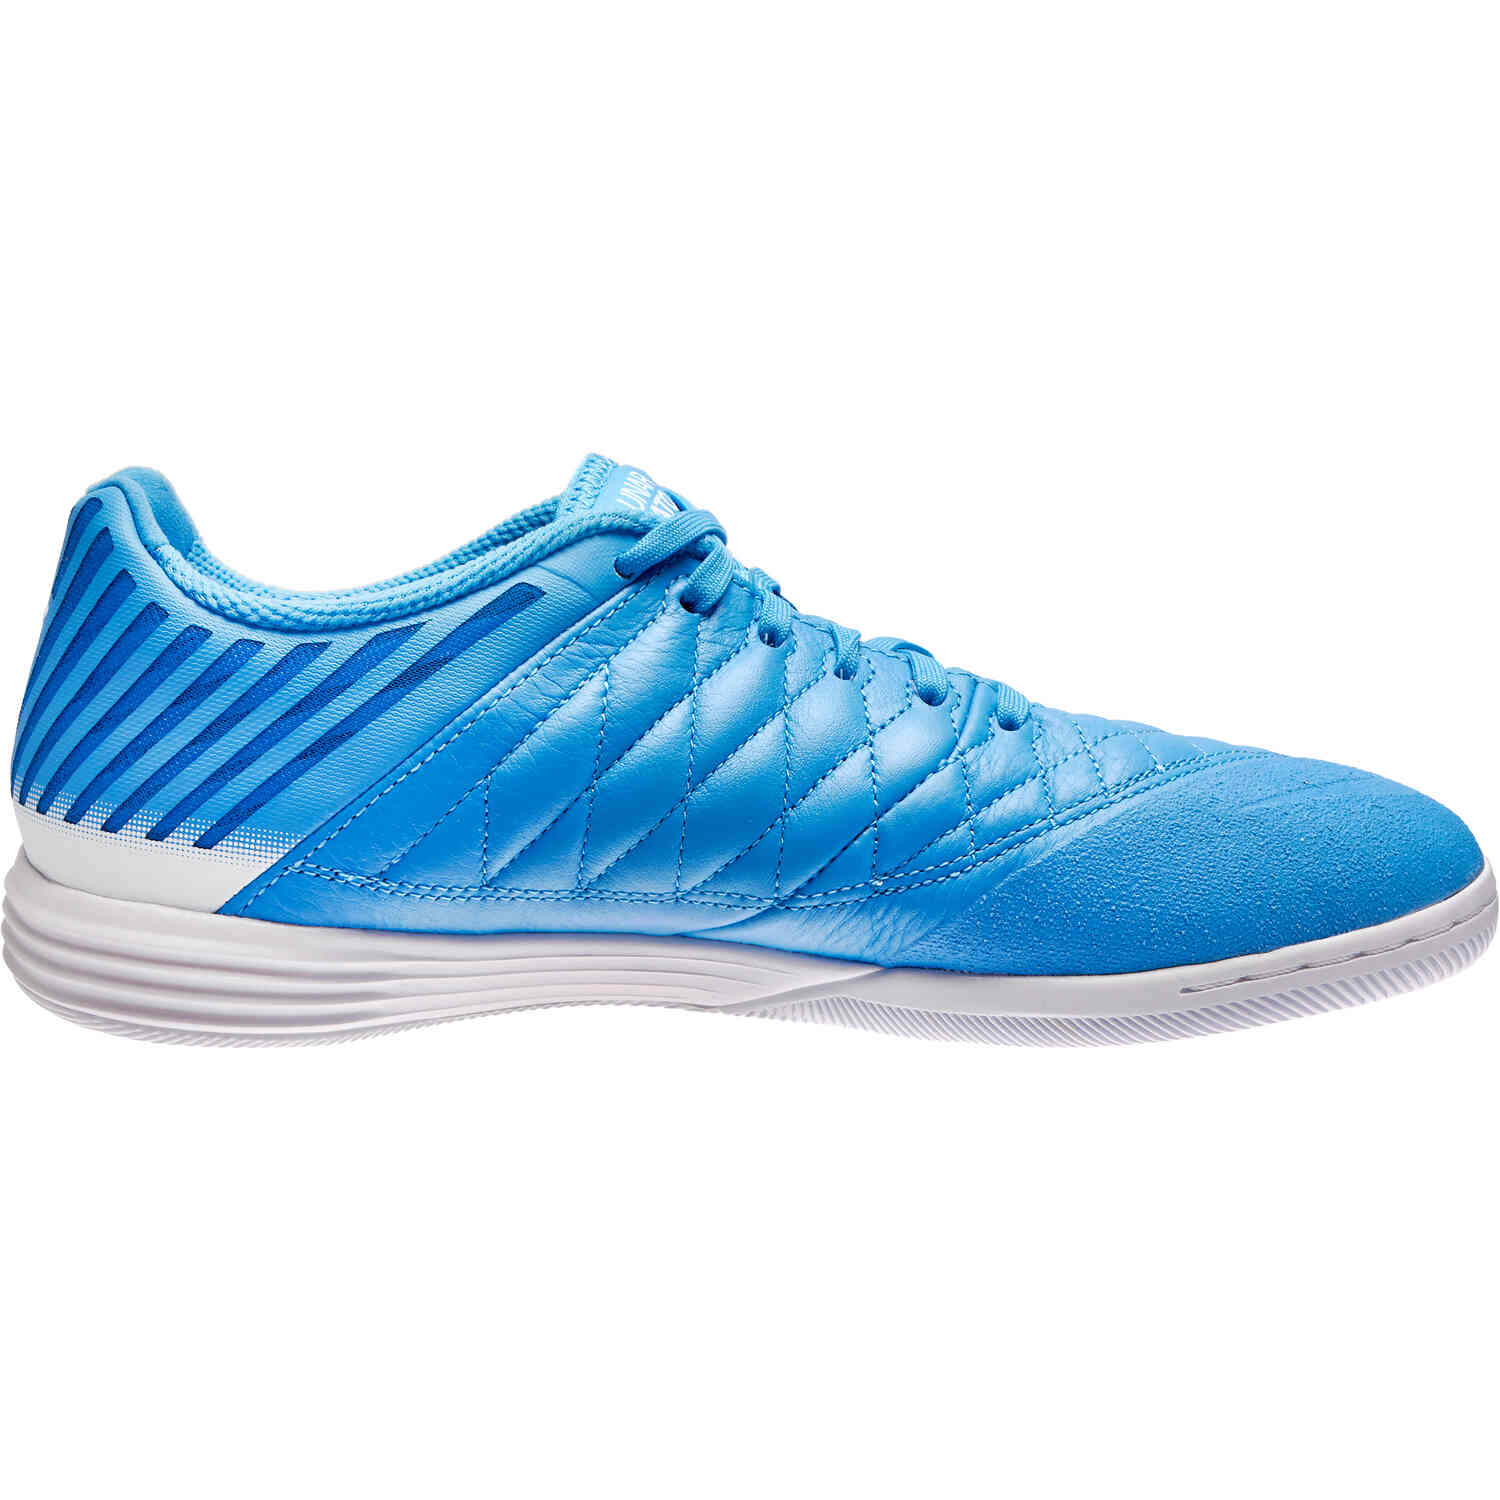 Nike Lunargato II IC – University Blue & White with University Blue